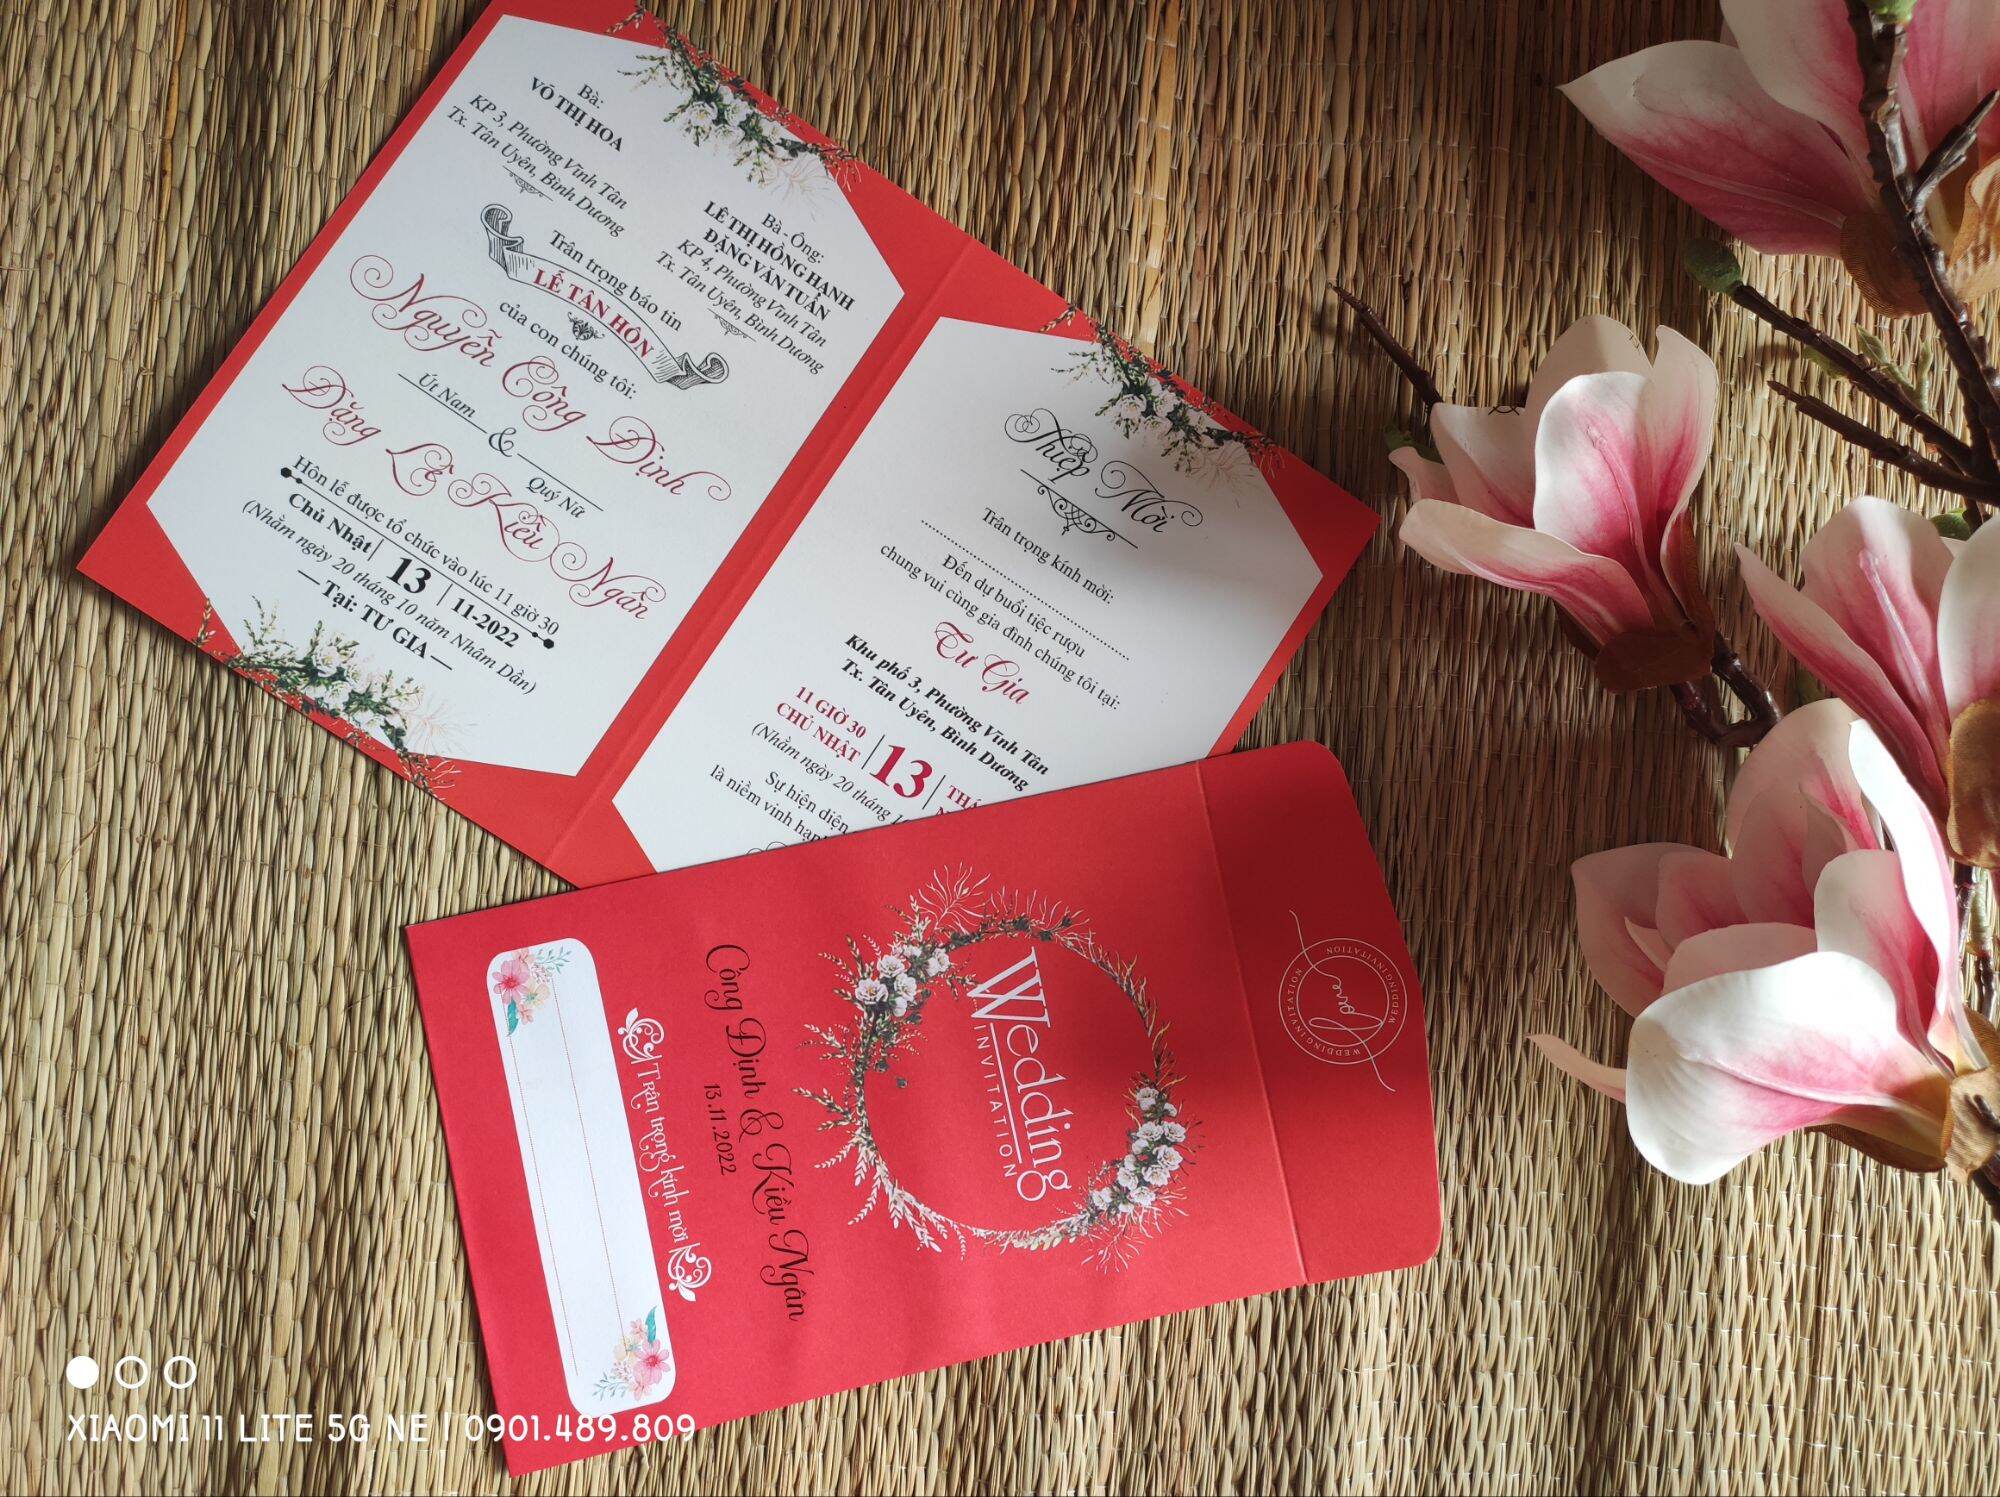 Thiệp cưới viết tay là điều đặc biệt mà bạn muốn dành tặng cho người thân trong ngày đặc biệt. Với những người thợ chuyên nghiệp tại Hà Nội, bạn sẽ tìm được những bản thiệp cưới hoàn hảo và đẹp nhất cho ngày đặc biệt của mình.